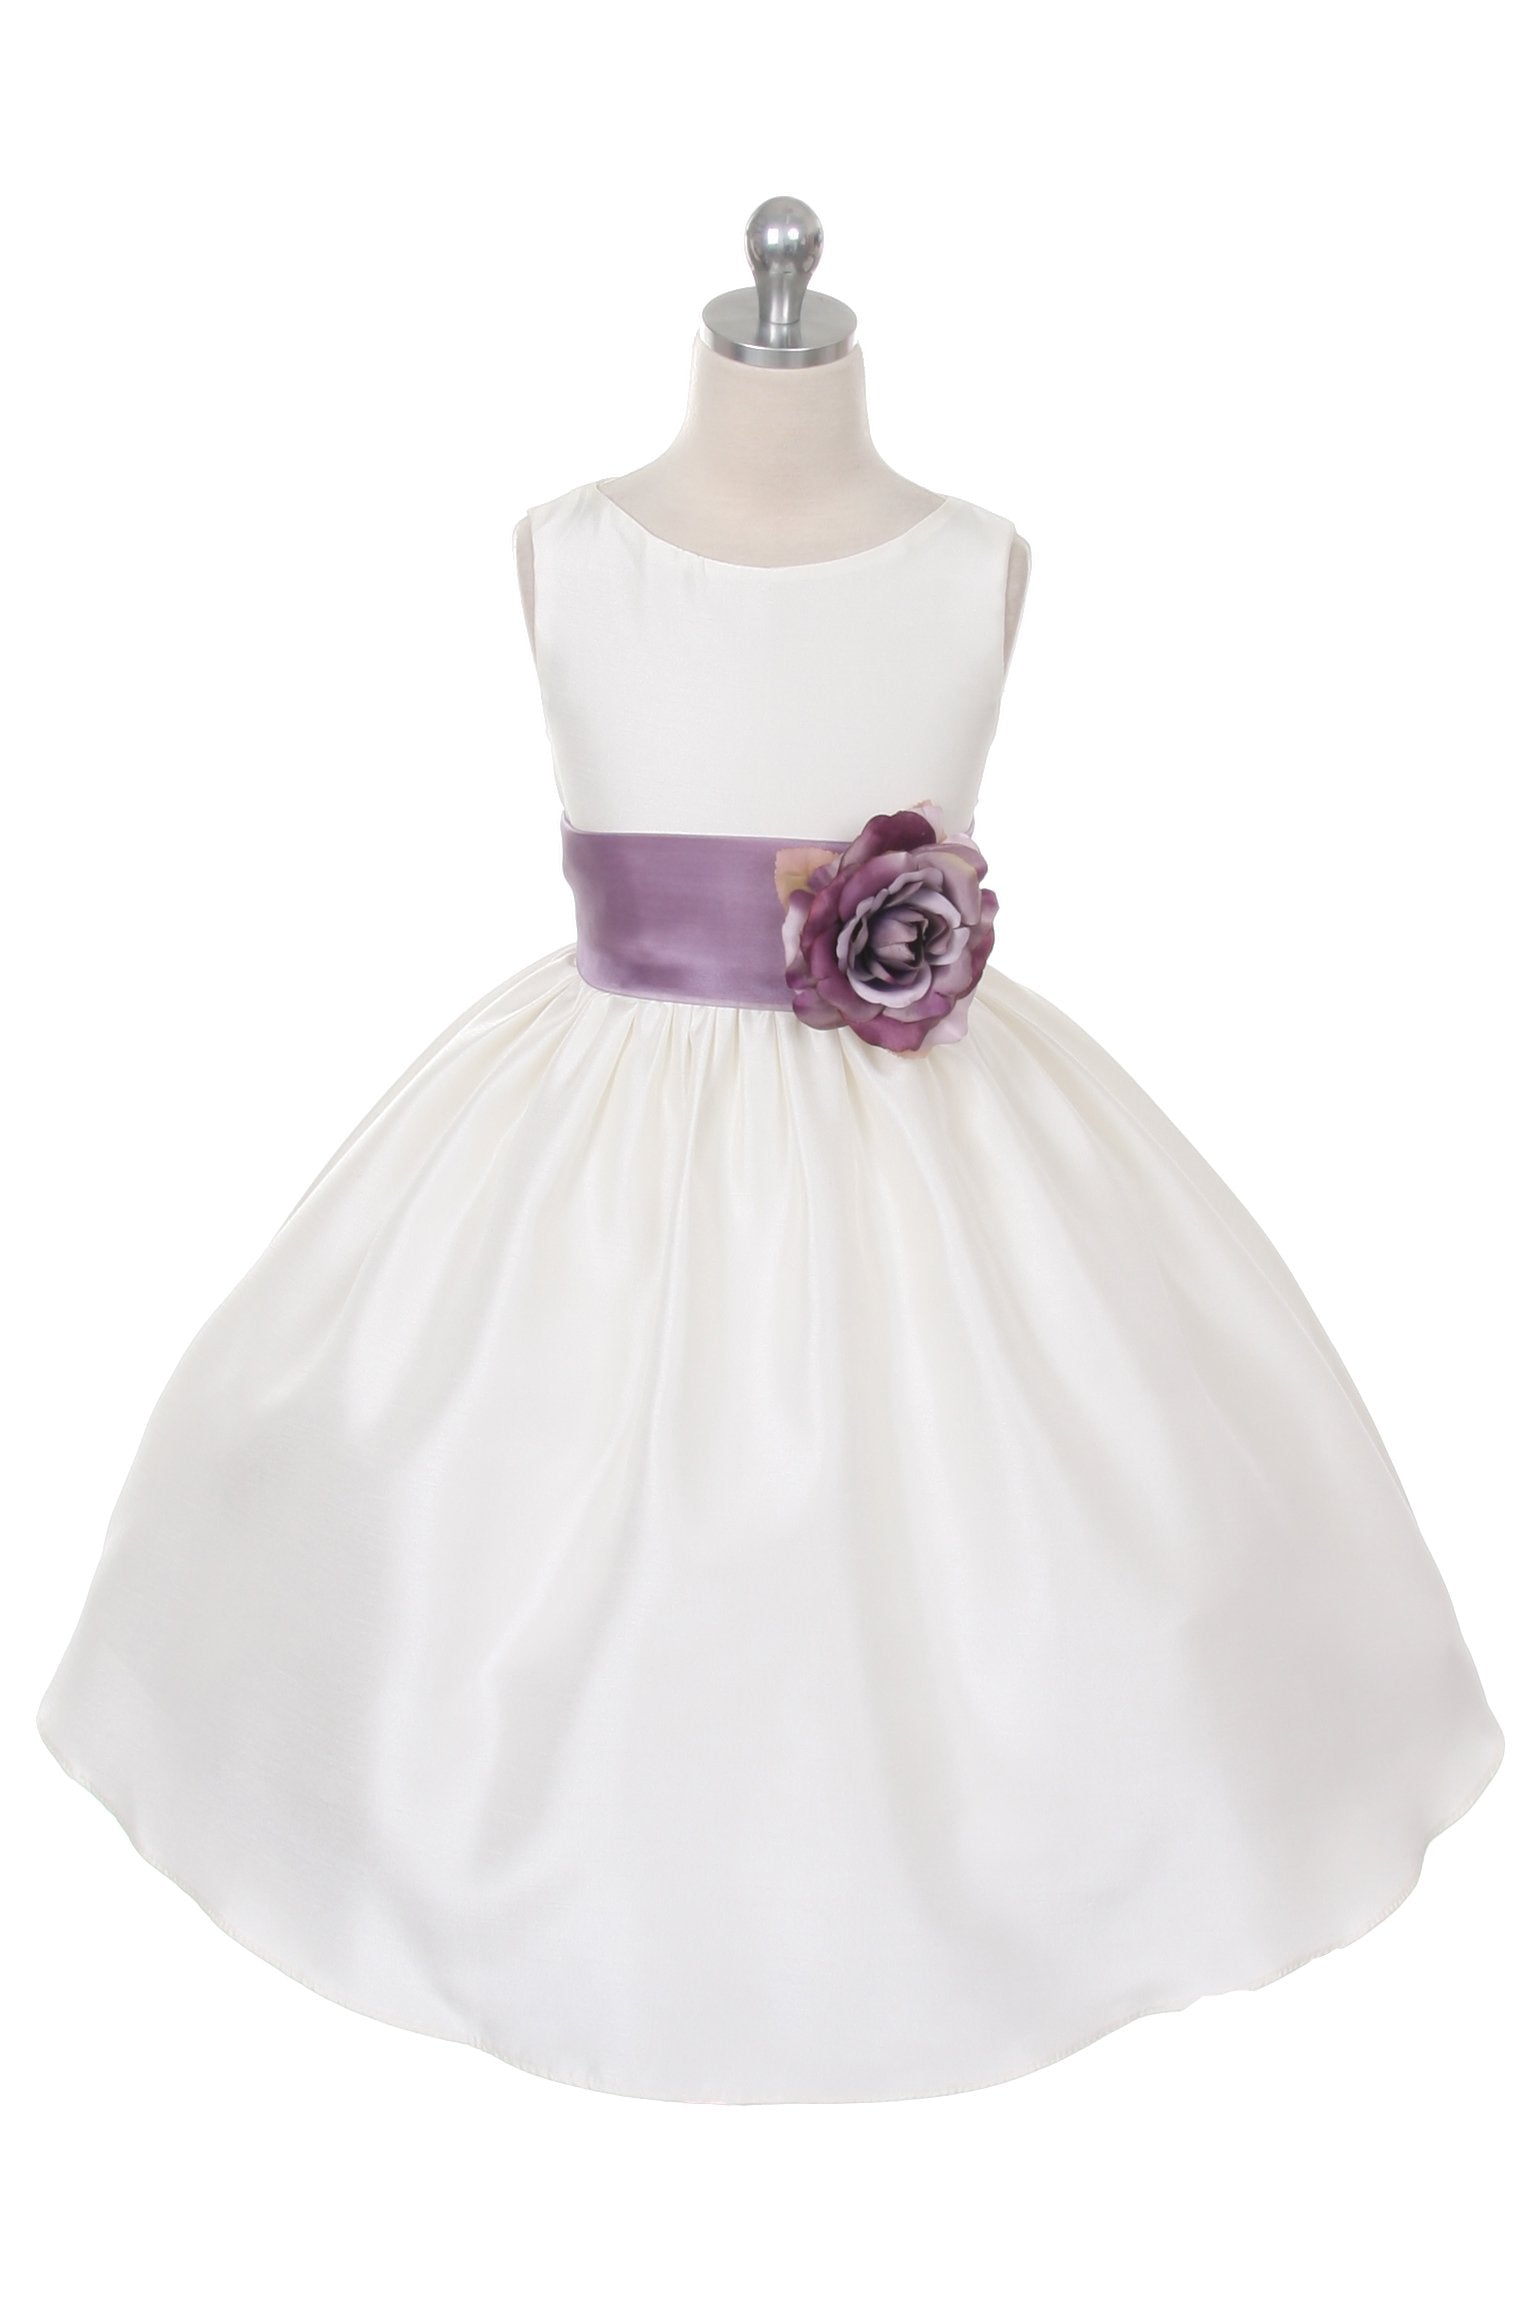 Dress - Poly Silk Organza Sash Girl Dress (White Dress)